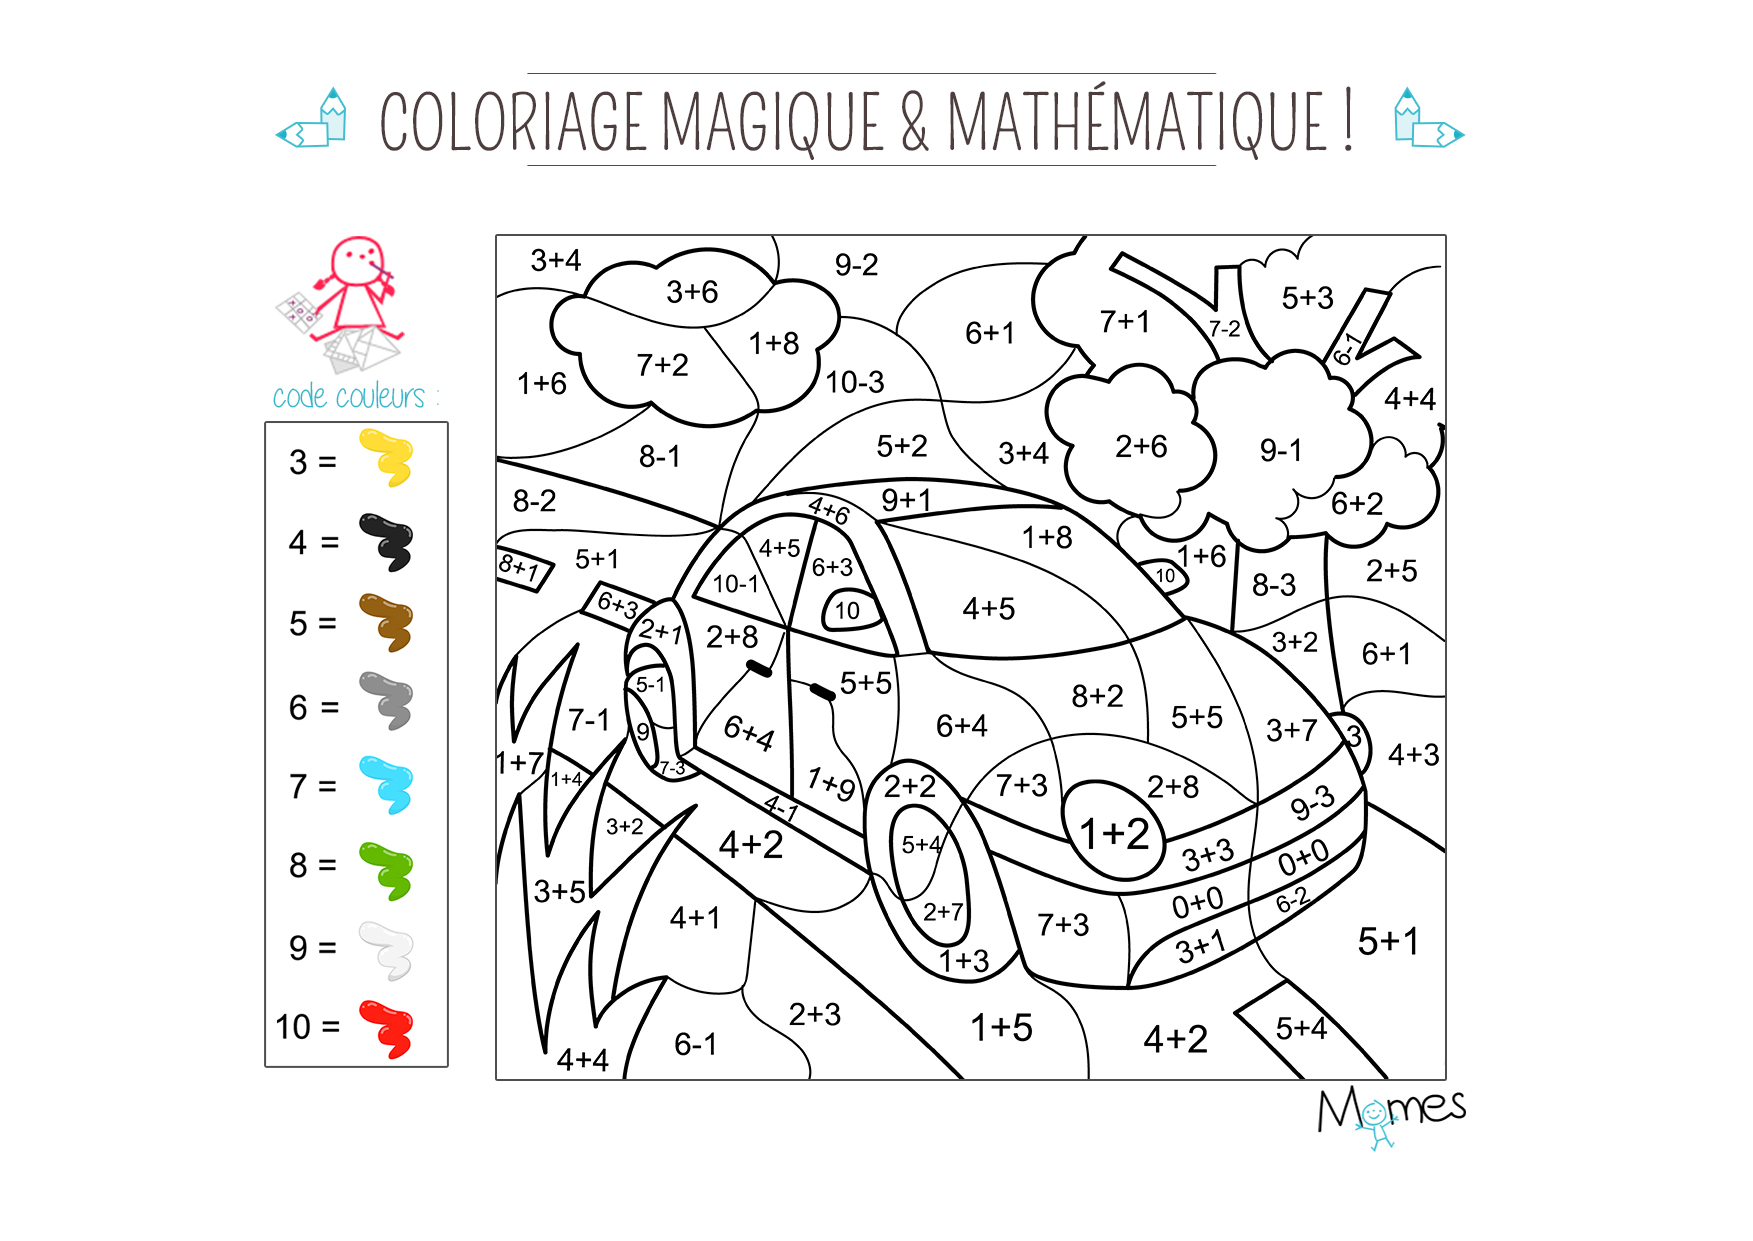 Coloriage magique et mathématique : la voiture - Momes.net